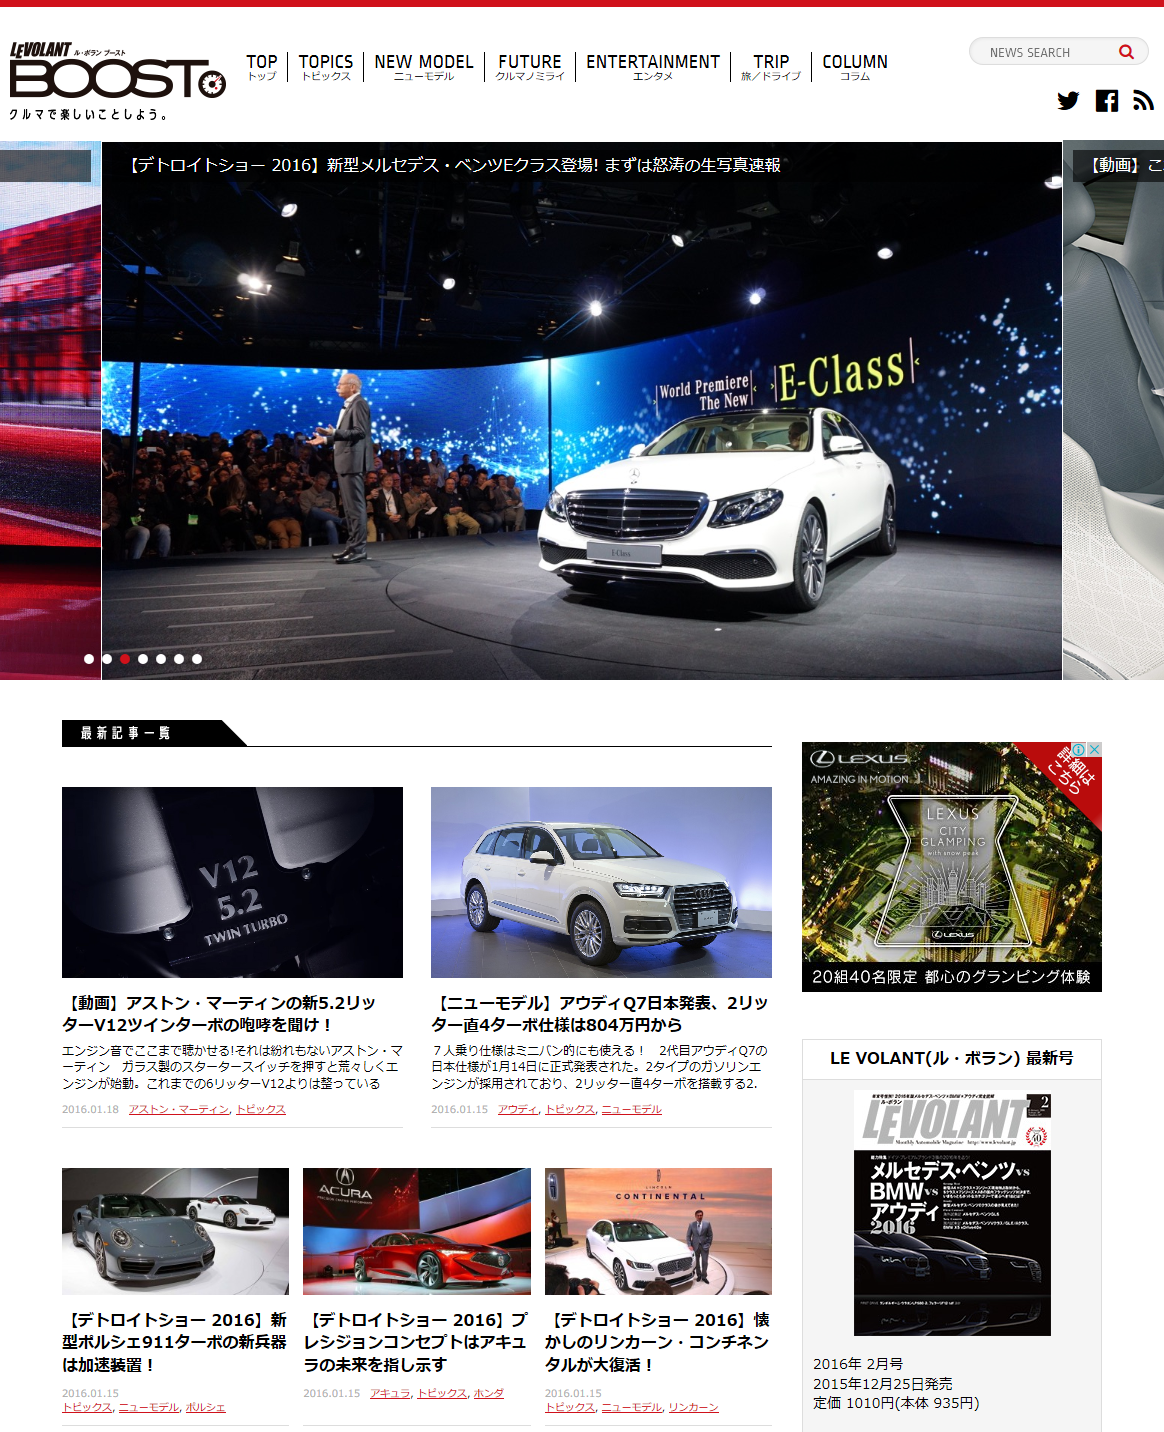 欧州自動車雑誌「ル・ボラン」のWebサイト「LE VOLANT BOOST（ル・ボラン ブースト）」と私がチェックしてる自動車サイト一覧＾＾